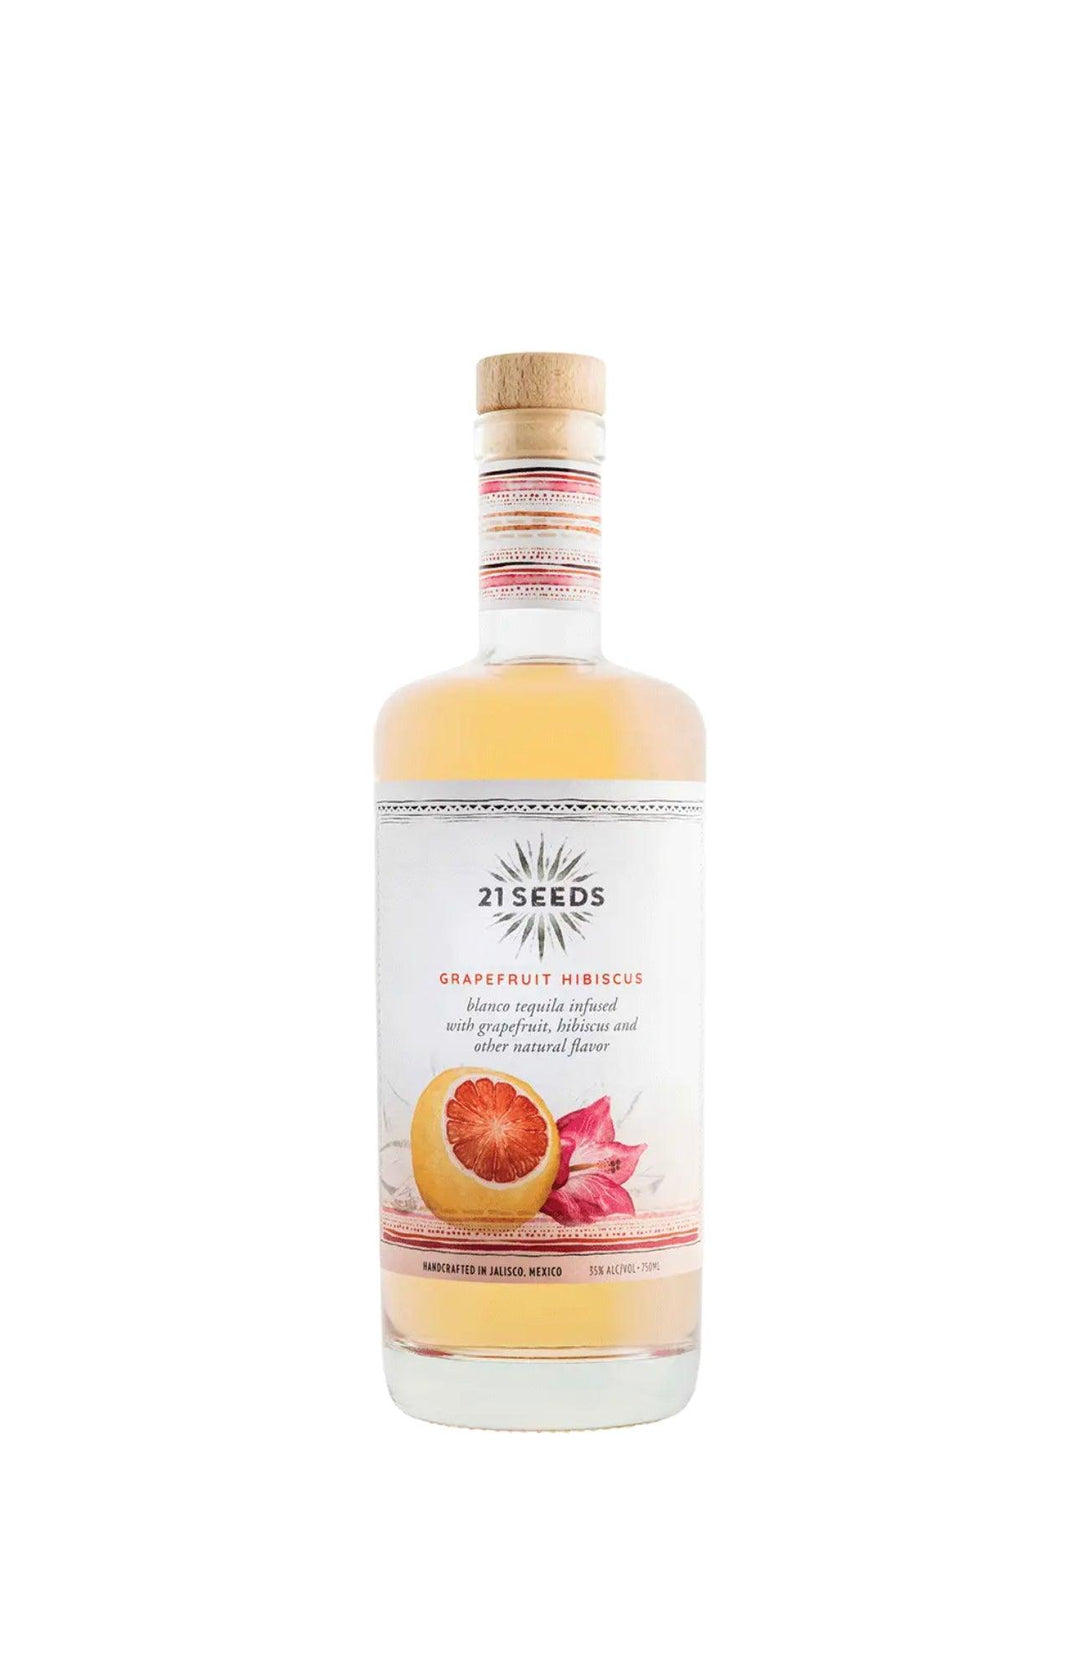 21 Seeds Grapefruit Hibiscus Tequila - Liquor Luxe